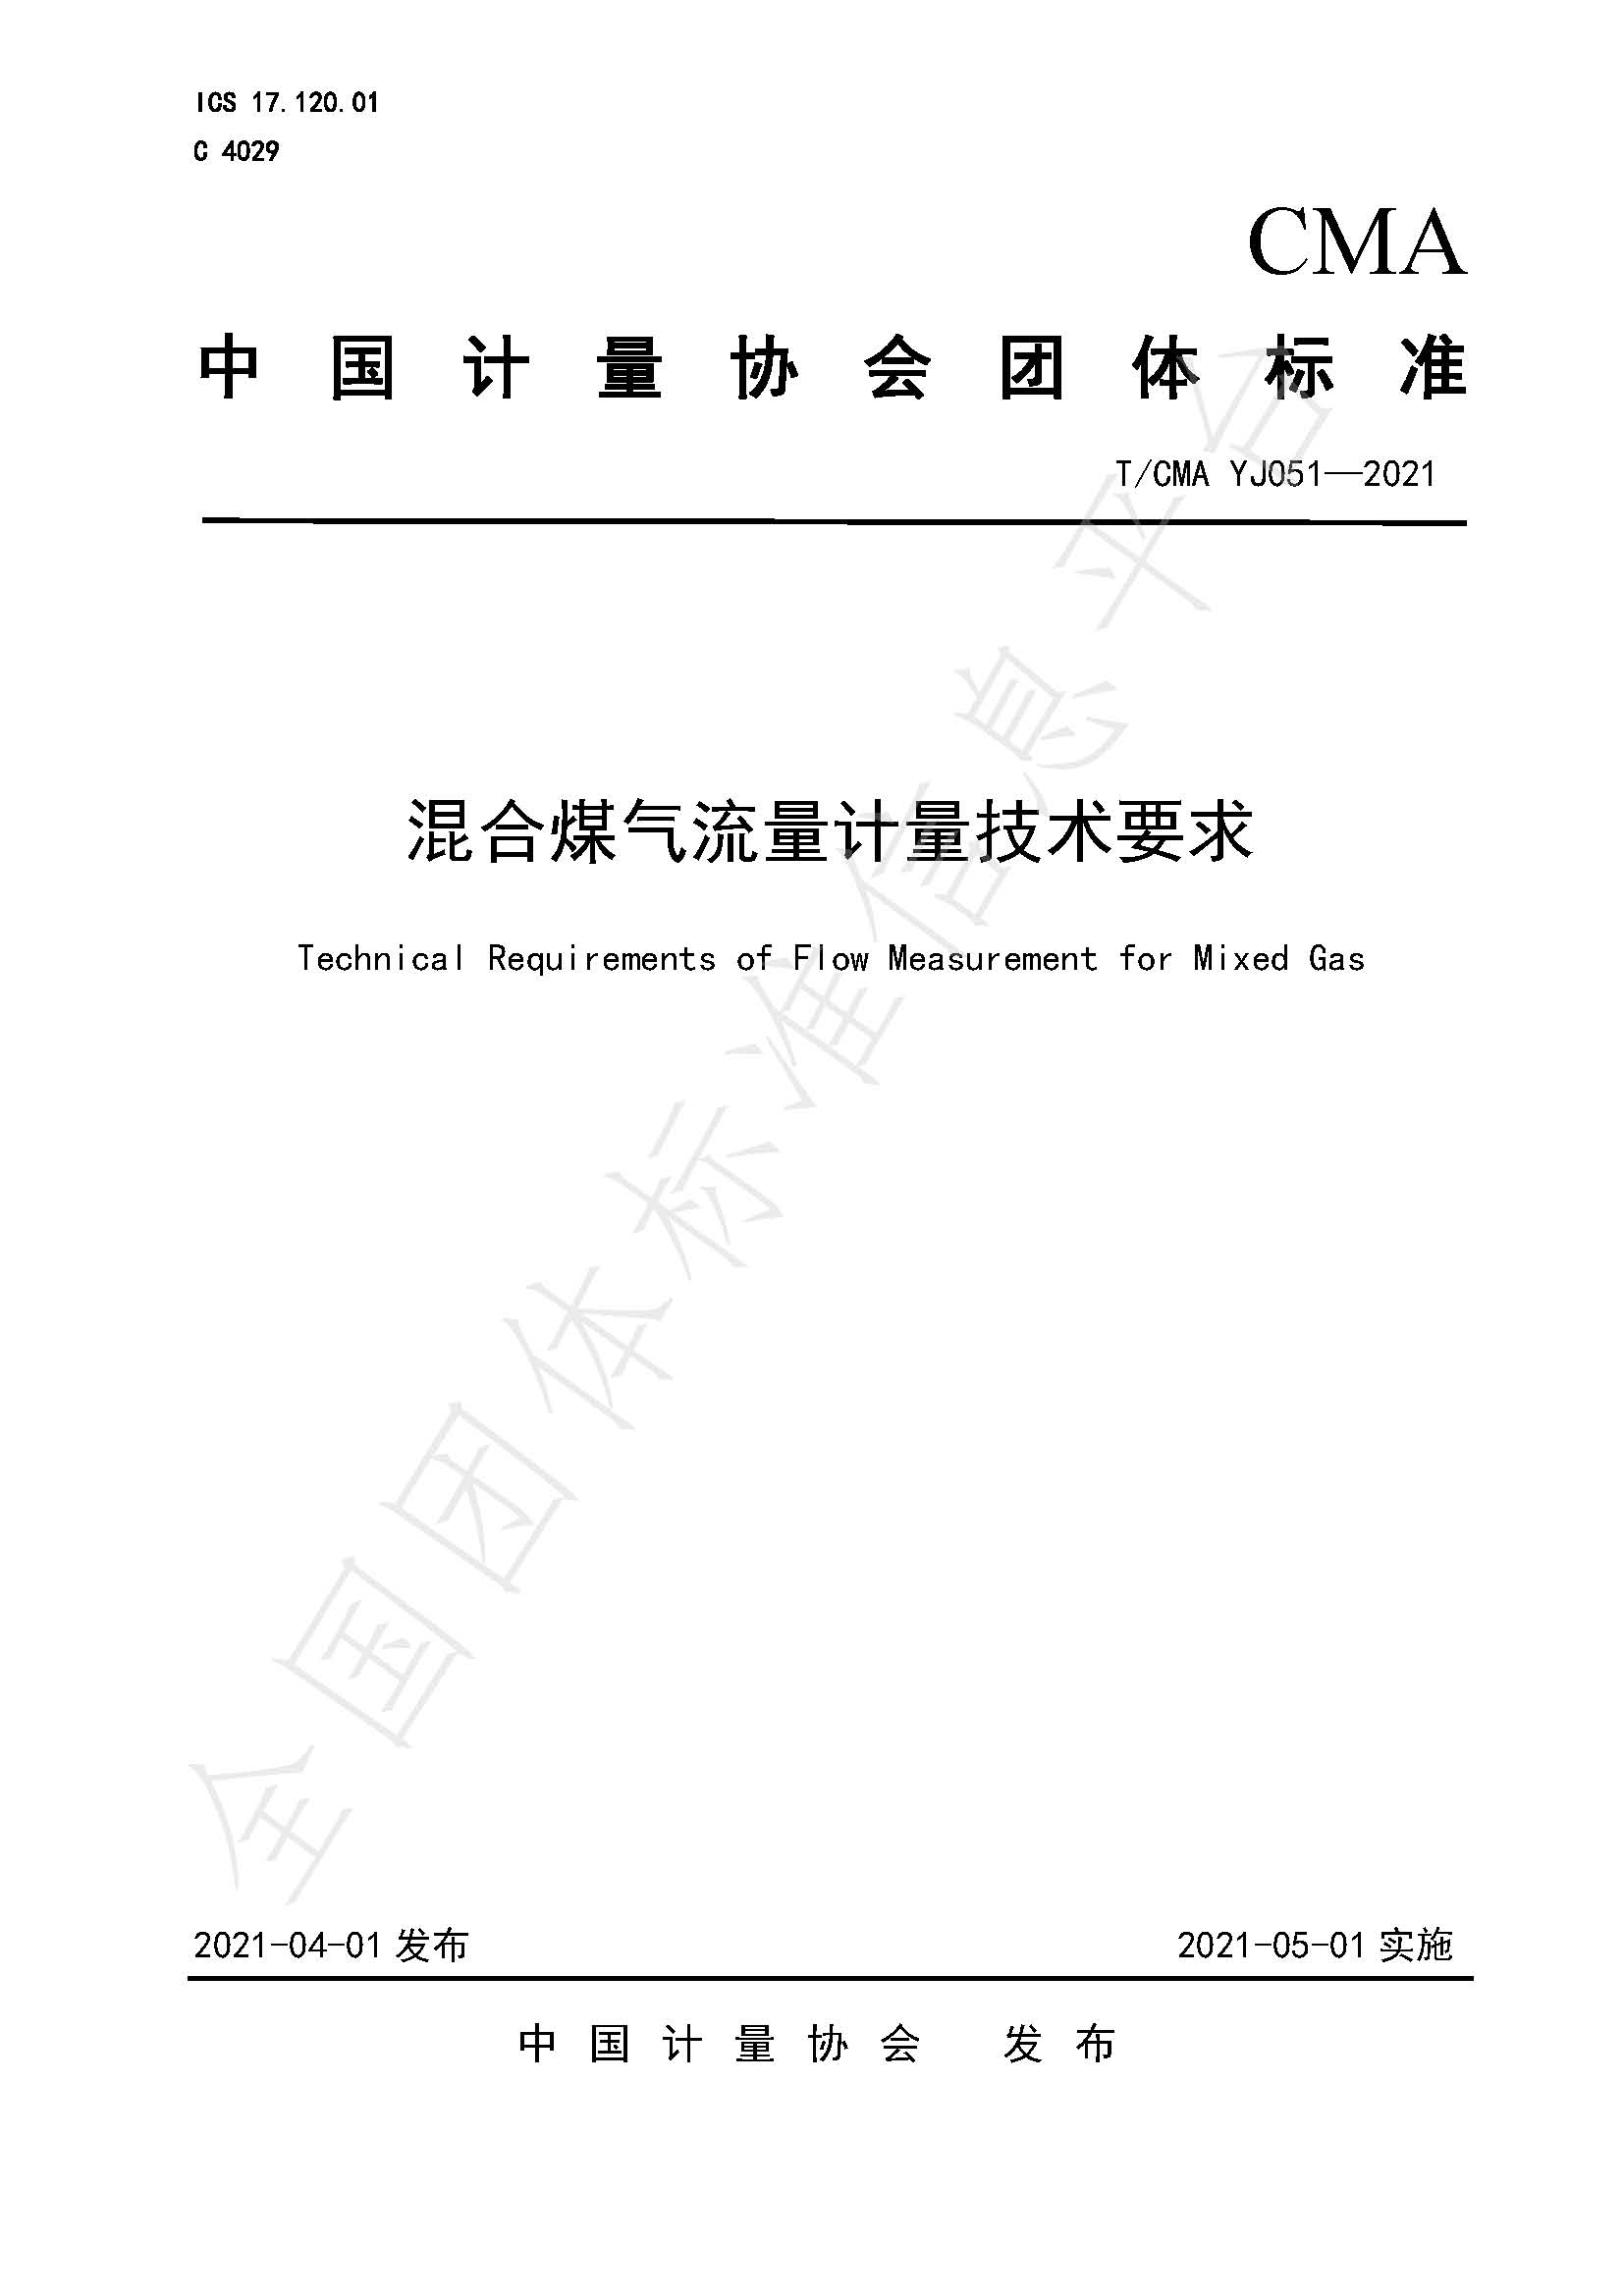 《混合煤气流量计量技术要求》标准（发布版）_页面_01.jpg